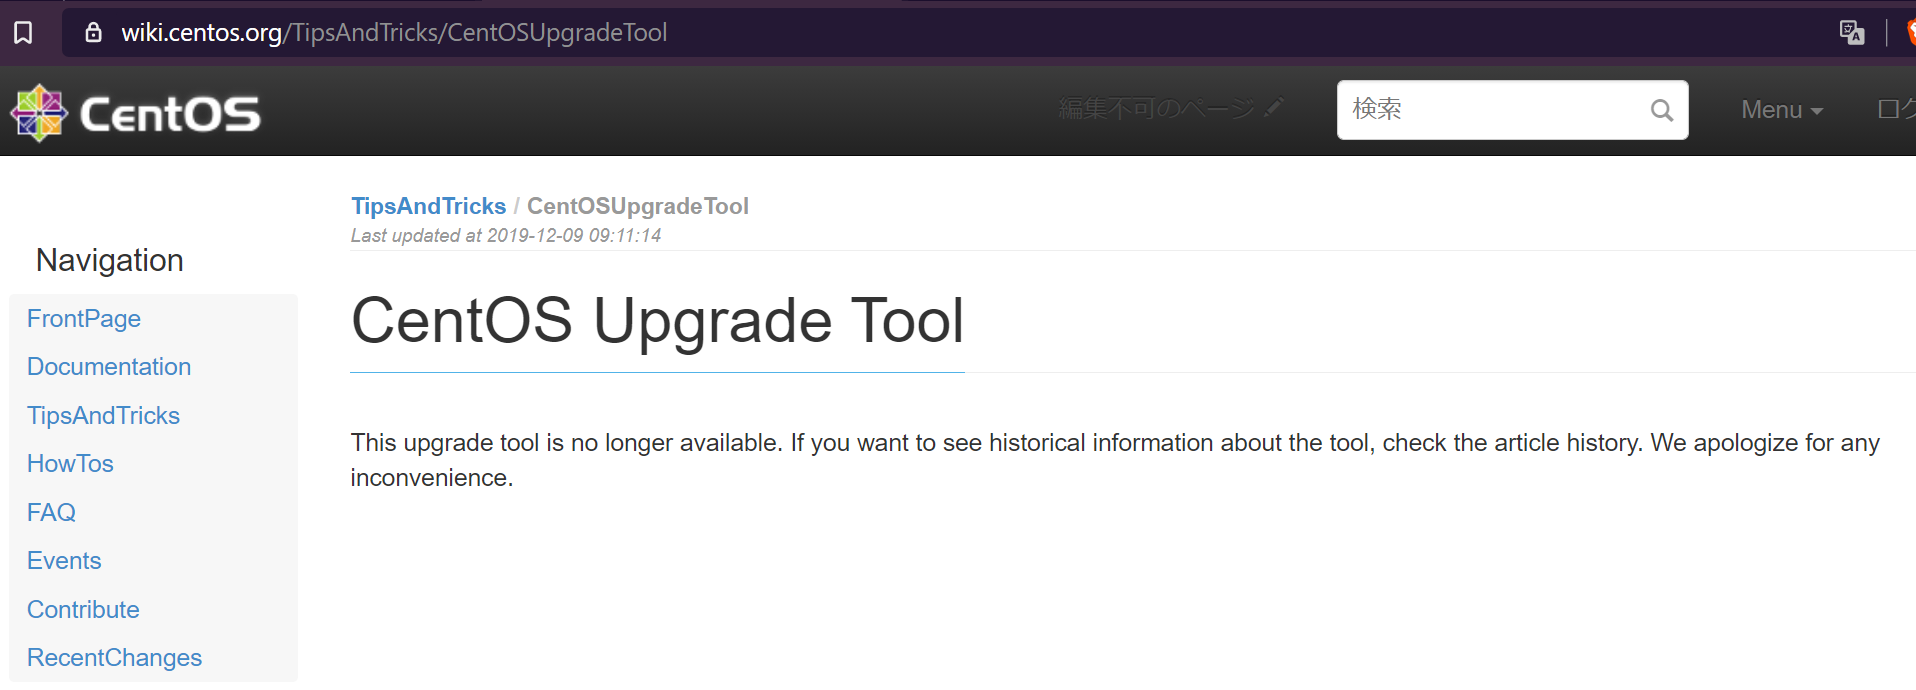 Screenshot of CentOS Documentation, "CentOS Upgrade Tool".